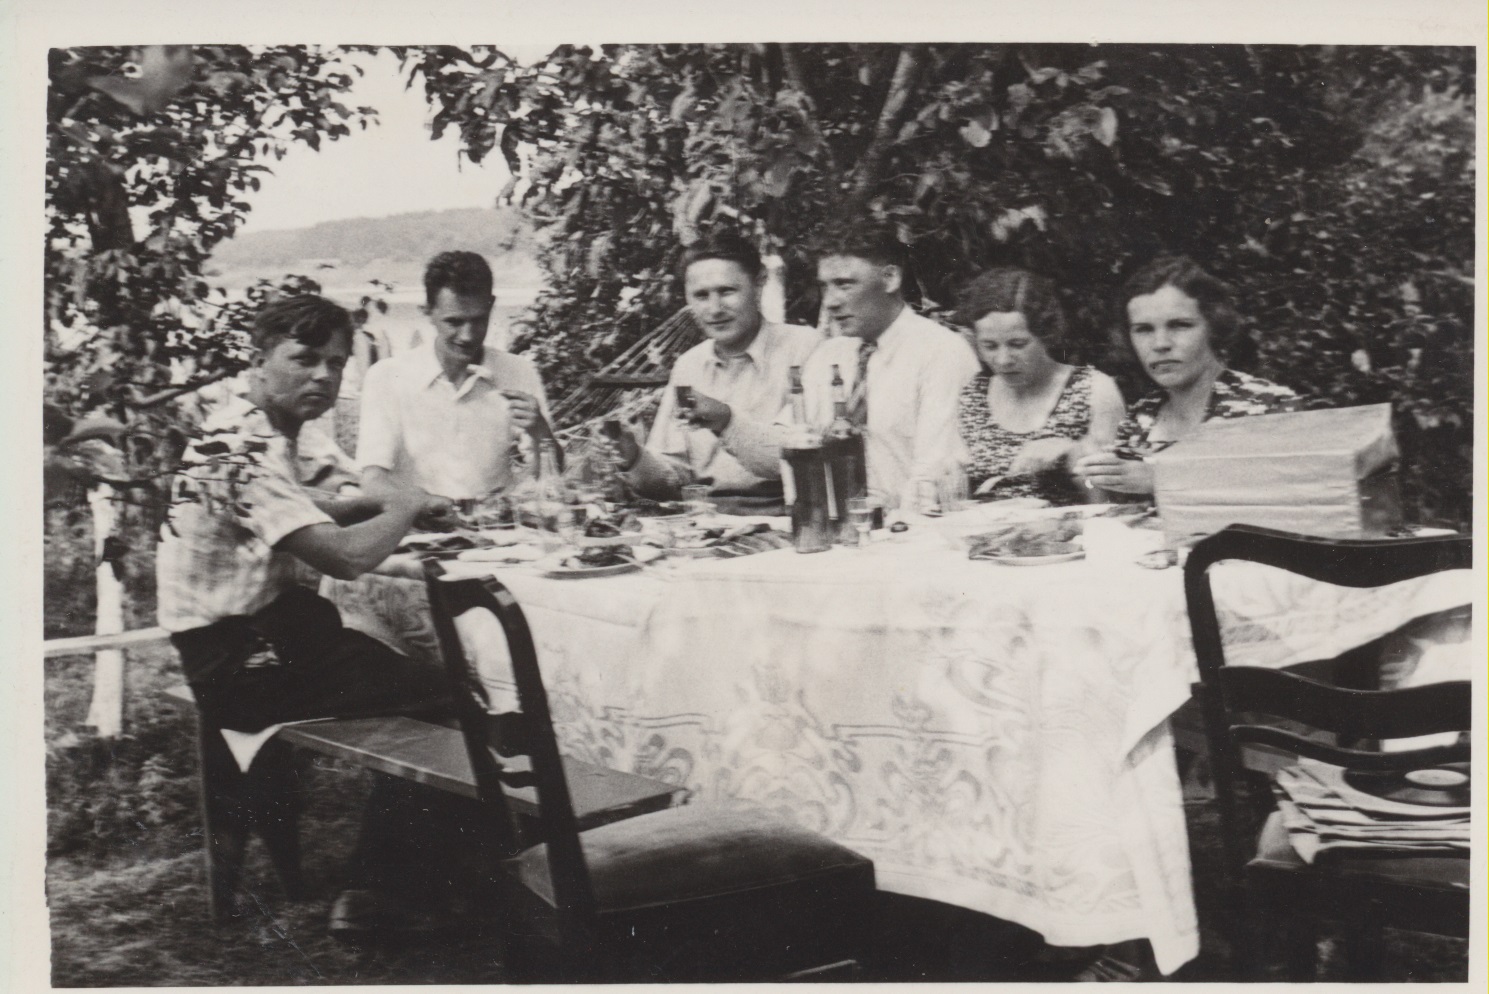 P. Cvirka (pirmas iš kairės), J. Šimkus (trečias iš kairės) ir atstovybės darbuotojai su žmonomis netoli Kauno. 1938 m.